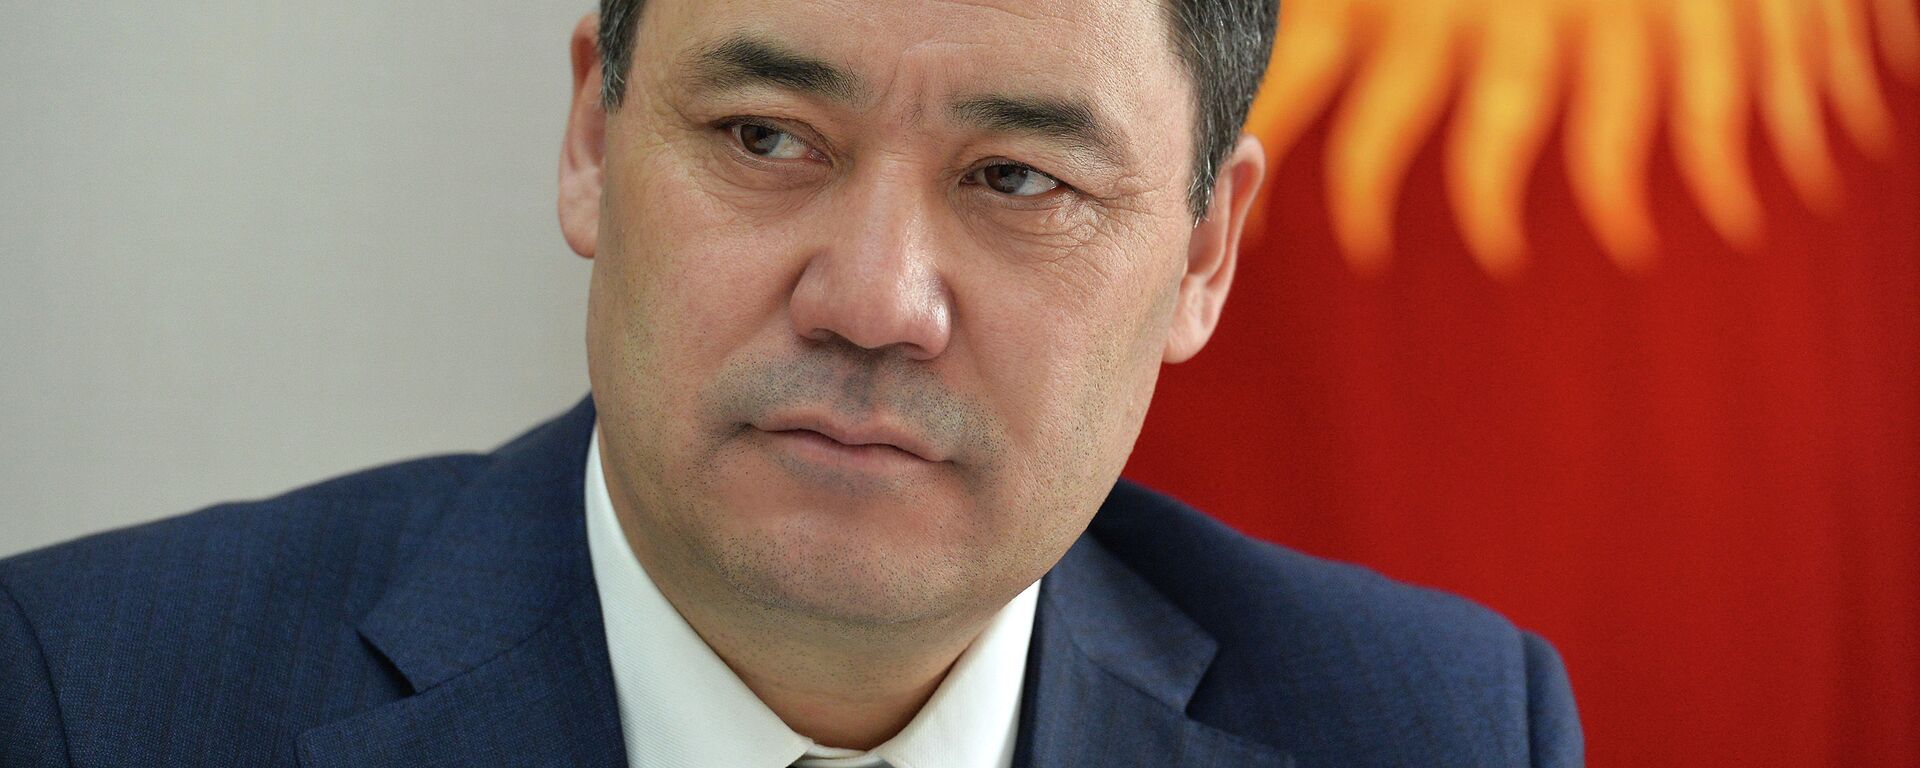 Президент Кыргызской Республики Садыр Жапаров - Sputnik Кыргызстан, 1920, 20.04.2021